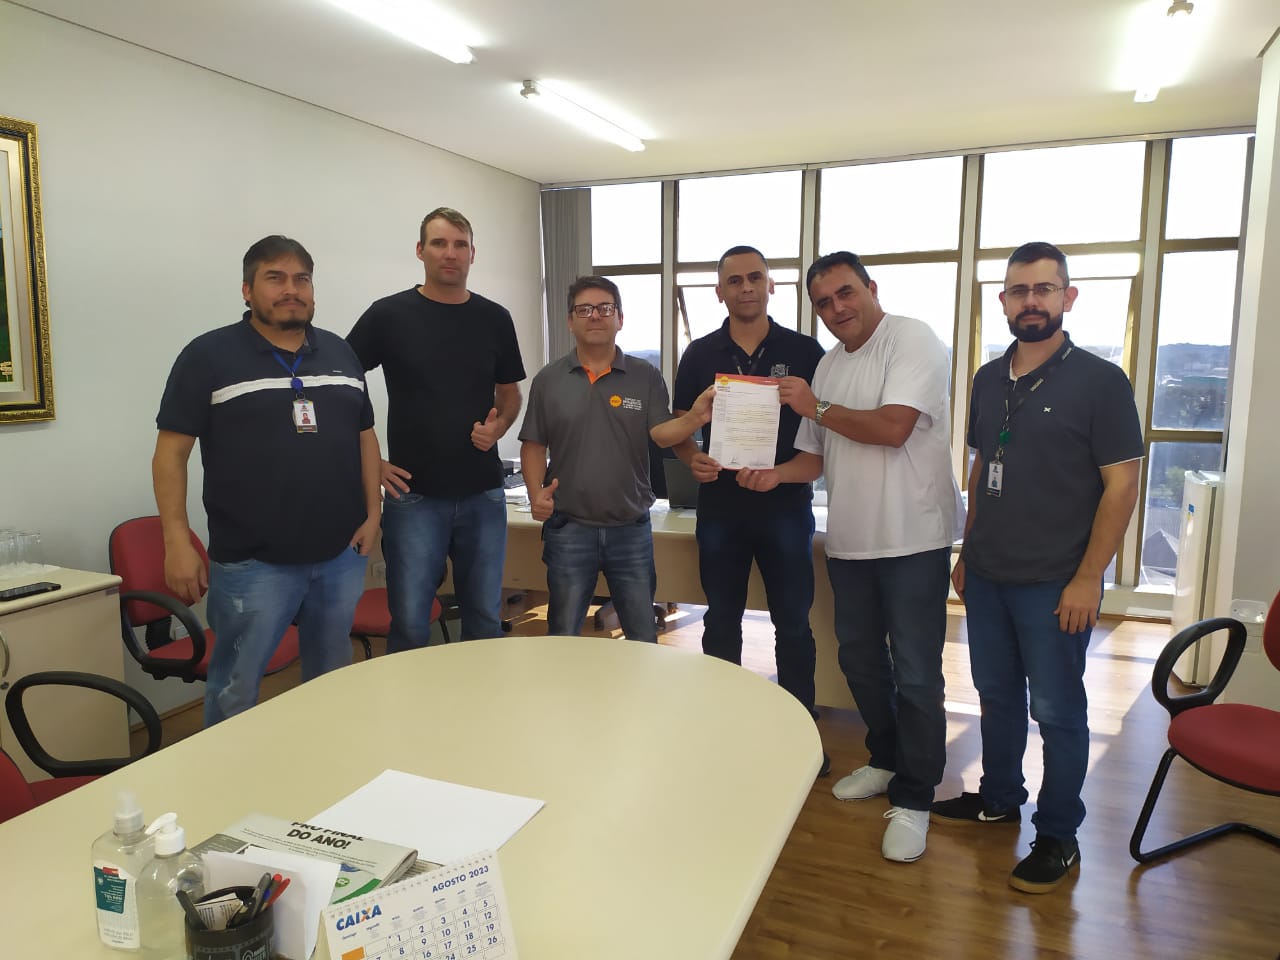 Integração Online! Sindicato realiza 1ª etapa da Liga SMC de Free Fire com  mais de 900 inscrições - SMC - Sindicato dos Metalúrgicos da Grande Curitiba